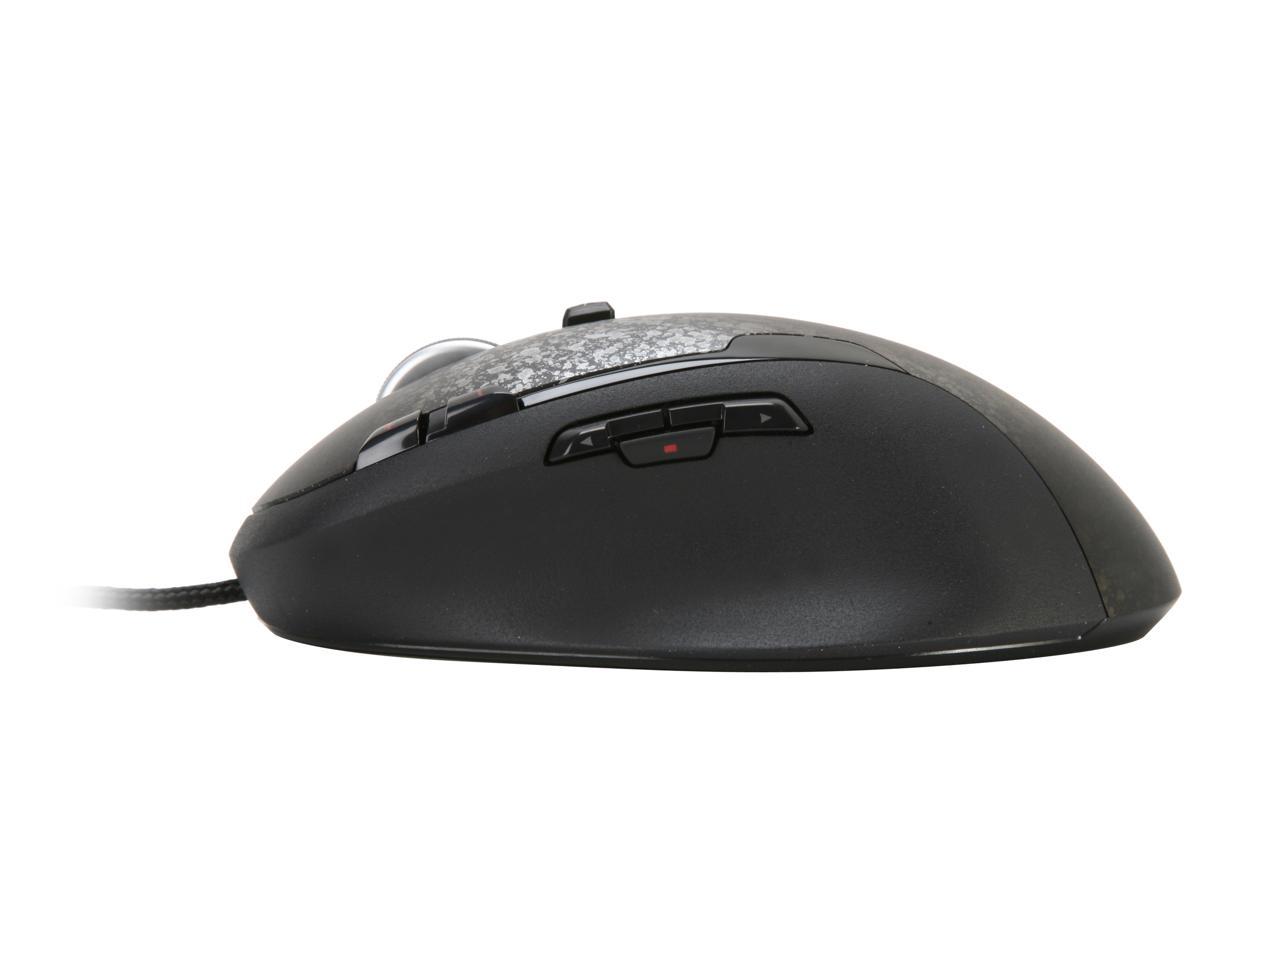 Logitech g500 910-001262 Gaming Mouse Souris USB 5700 dpi Carbon 